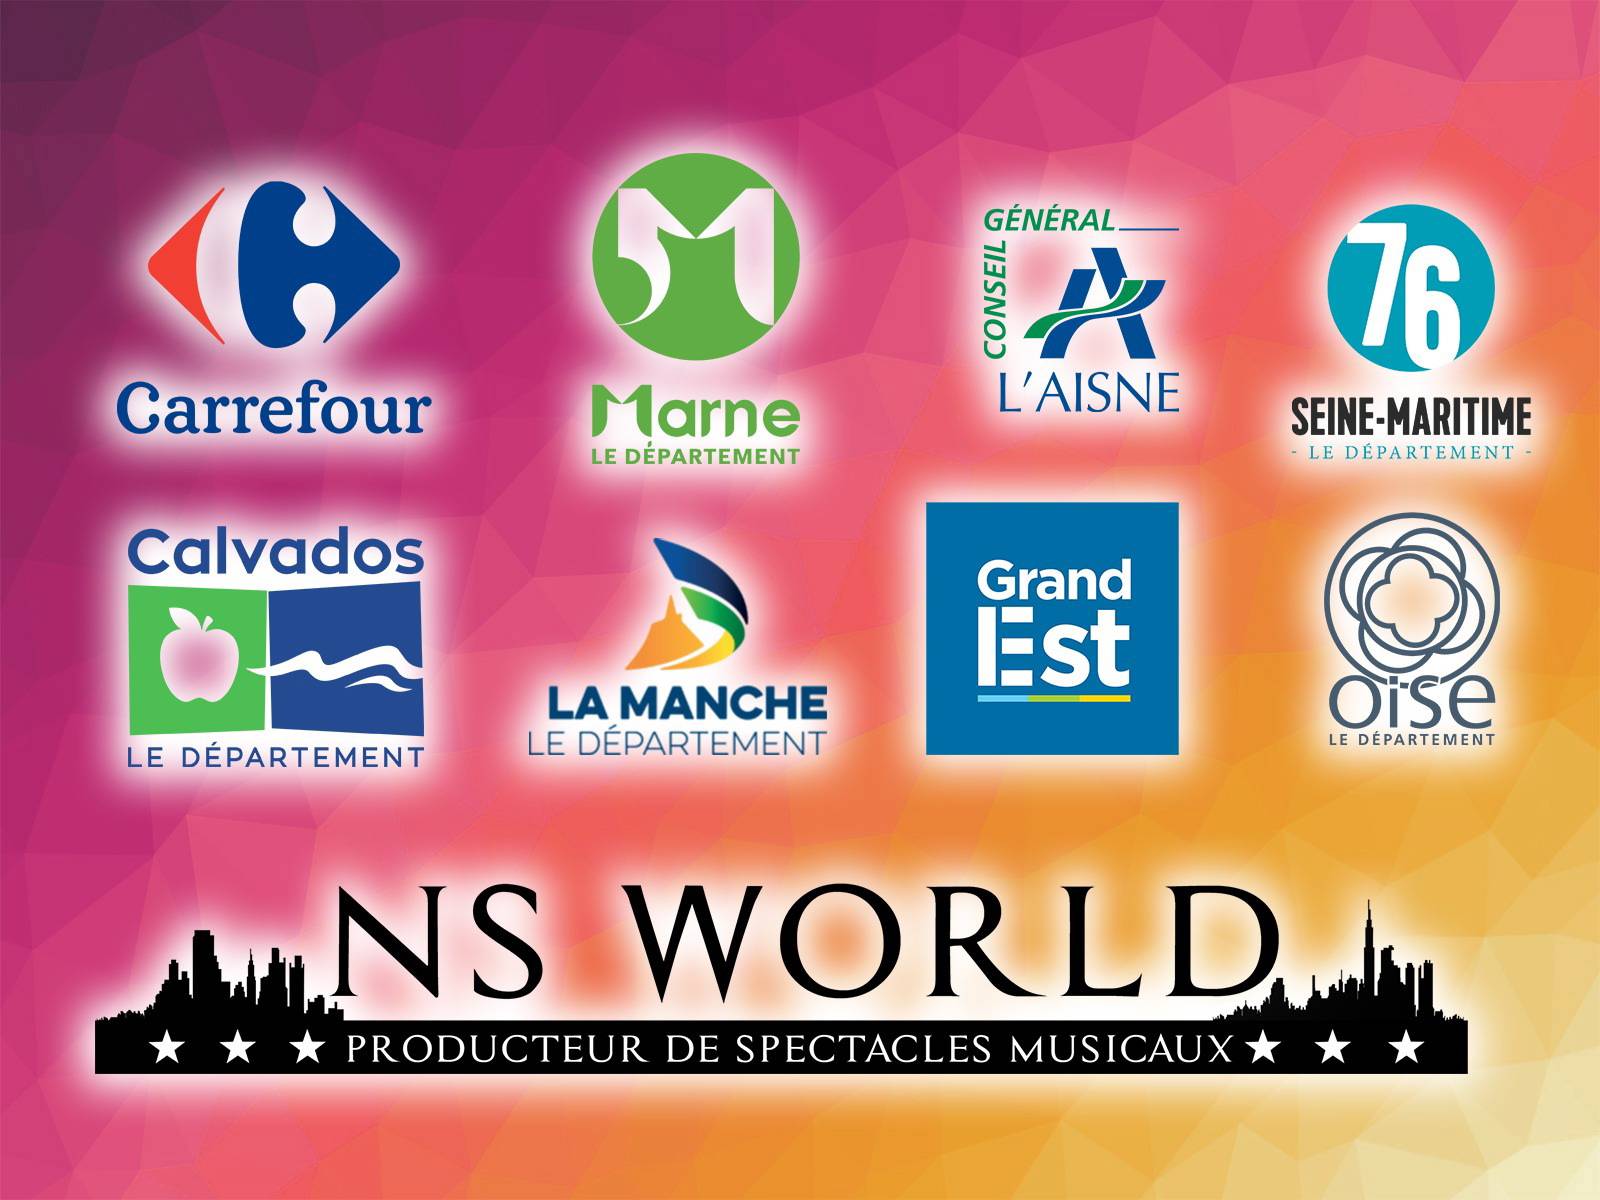 Les magasins Carrefours du Nord de la France ont fait confiance à NS World pour sublimer leur festivités avec nos spectacles musicaux